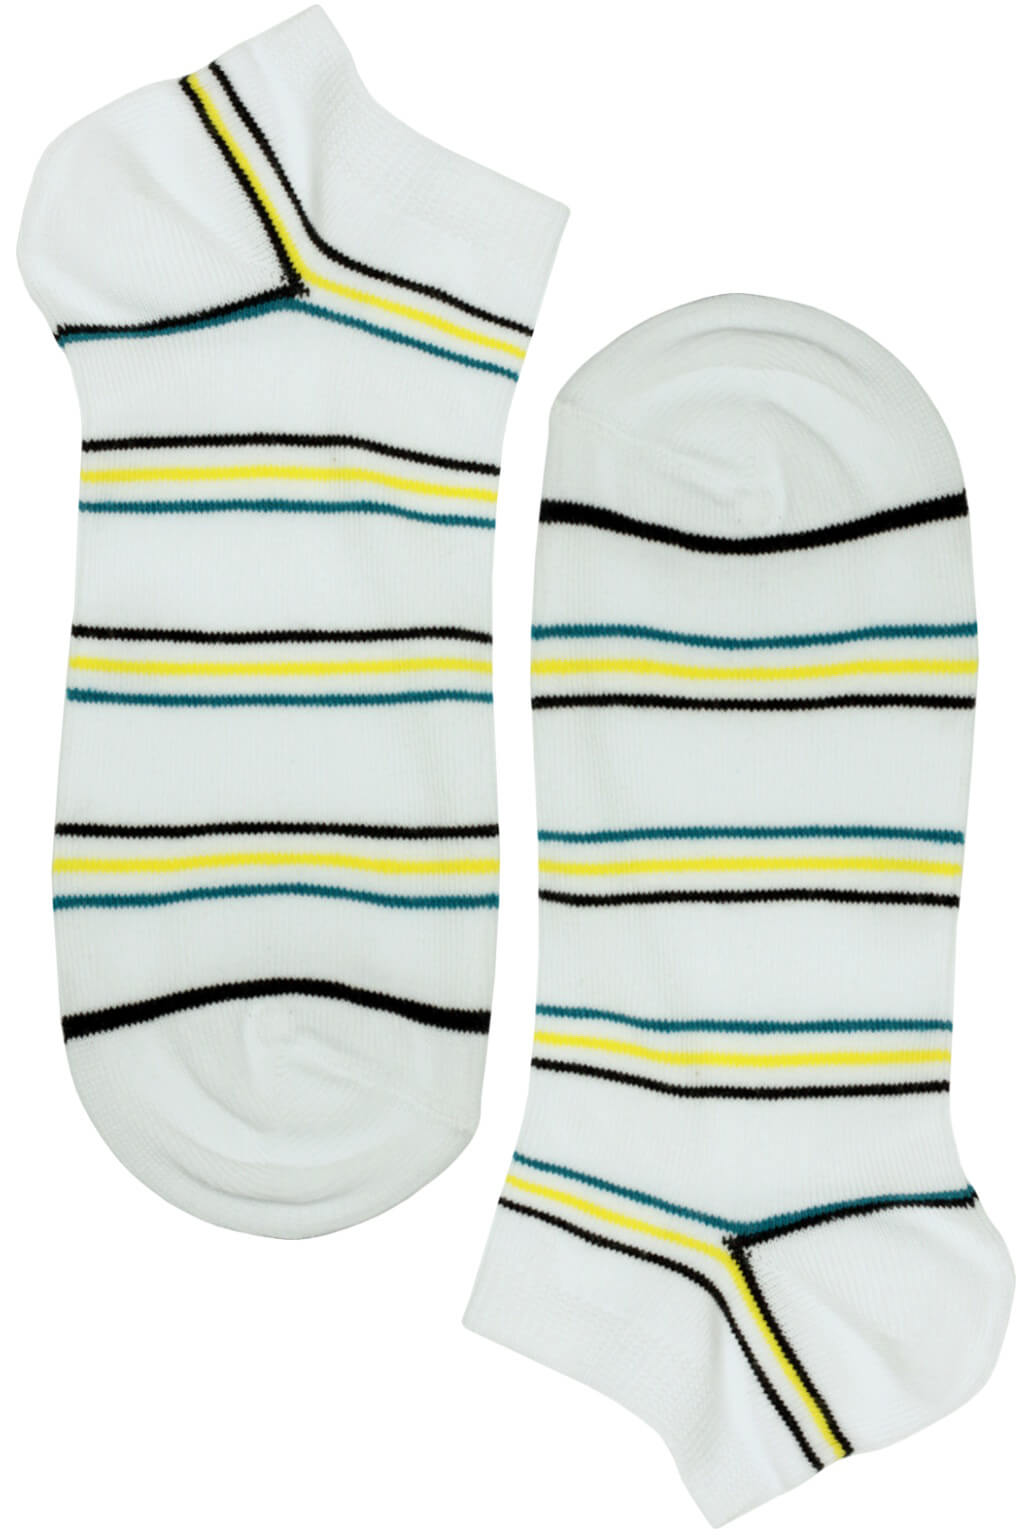 Bellinda ponožky - pánské nízké bavlněné s proužky 39-42 bílá